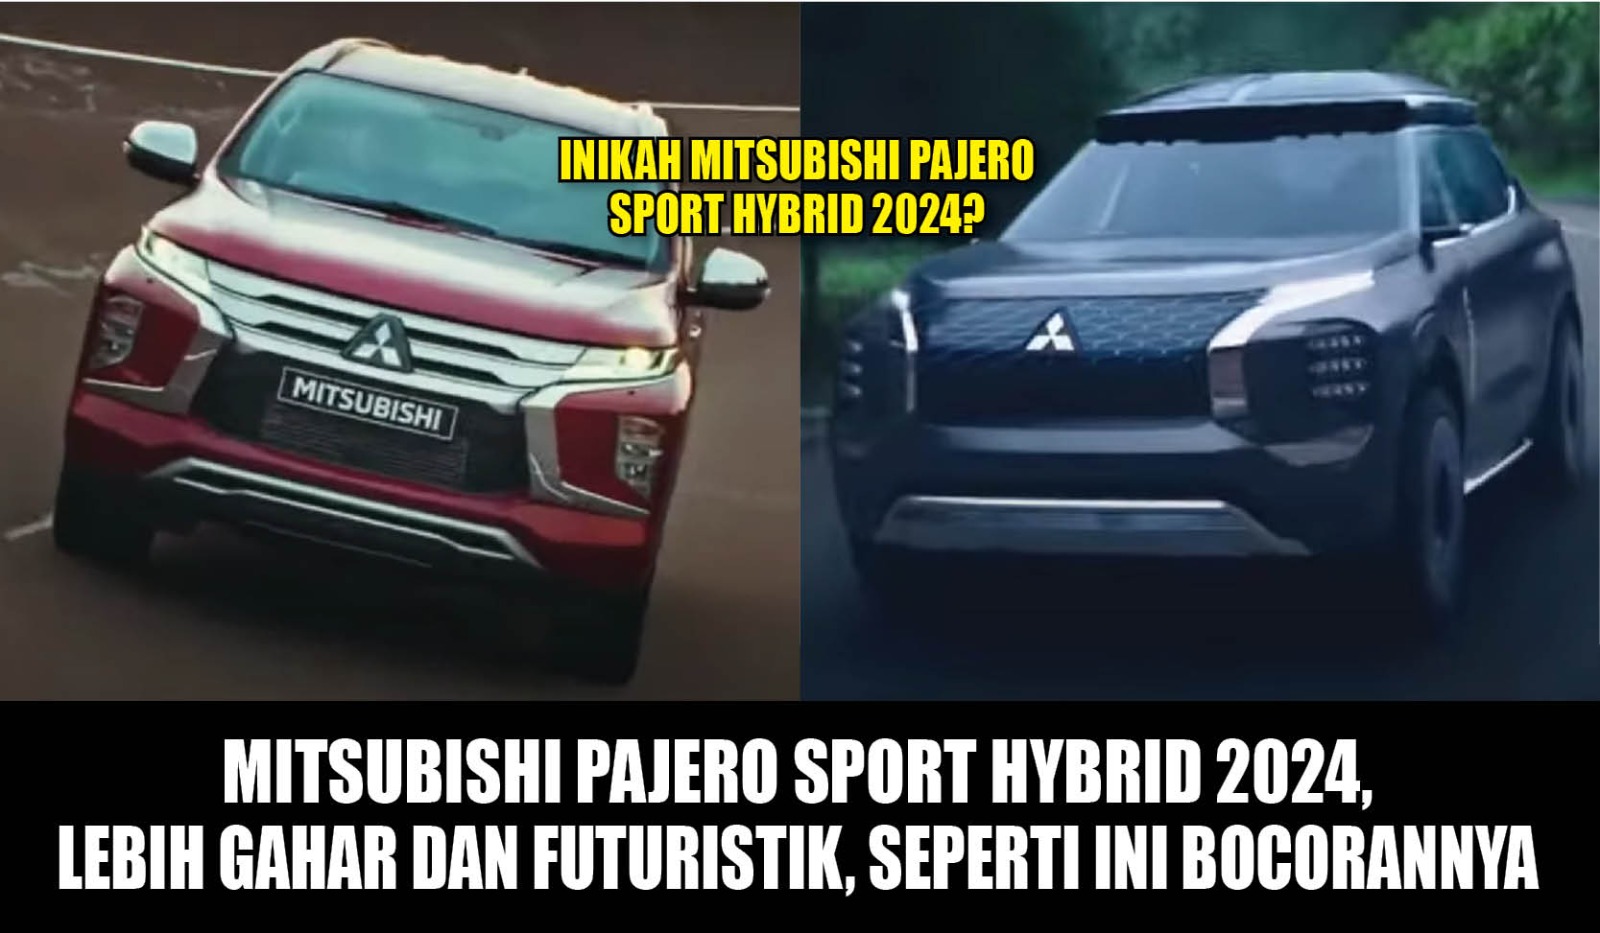 Mitsubishi Pajero Sport Hybrid 2024, Lebih Gahar dan Futuristik, Seperti Ini Bocorannya